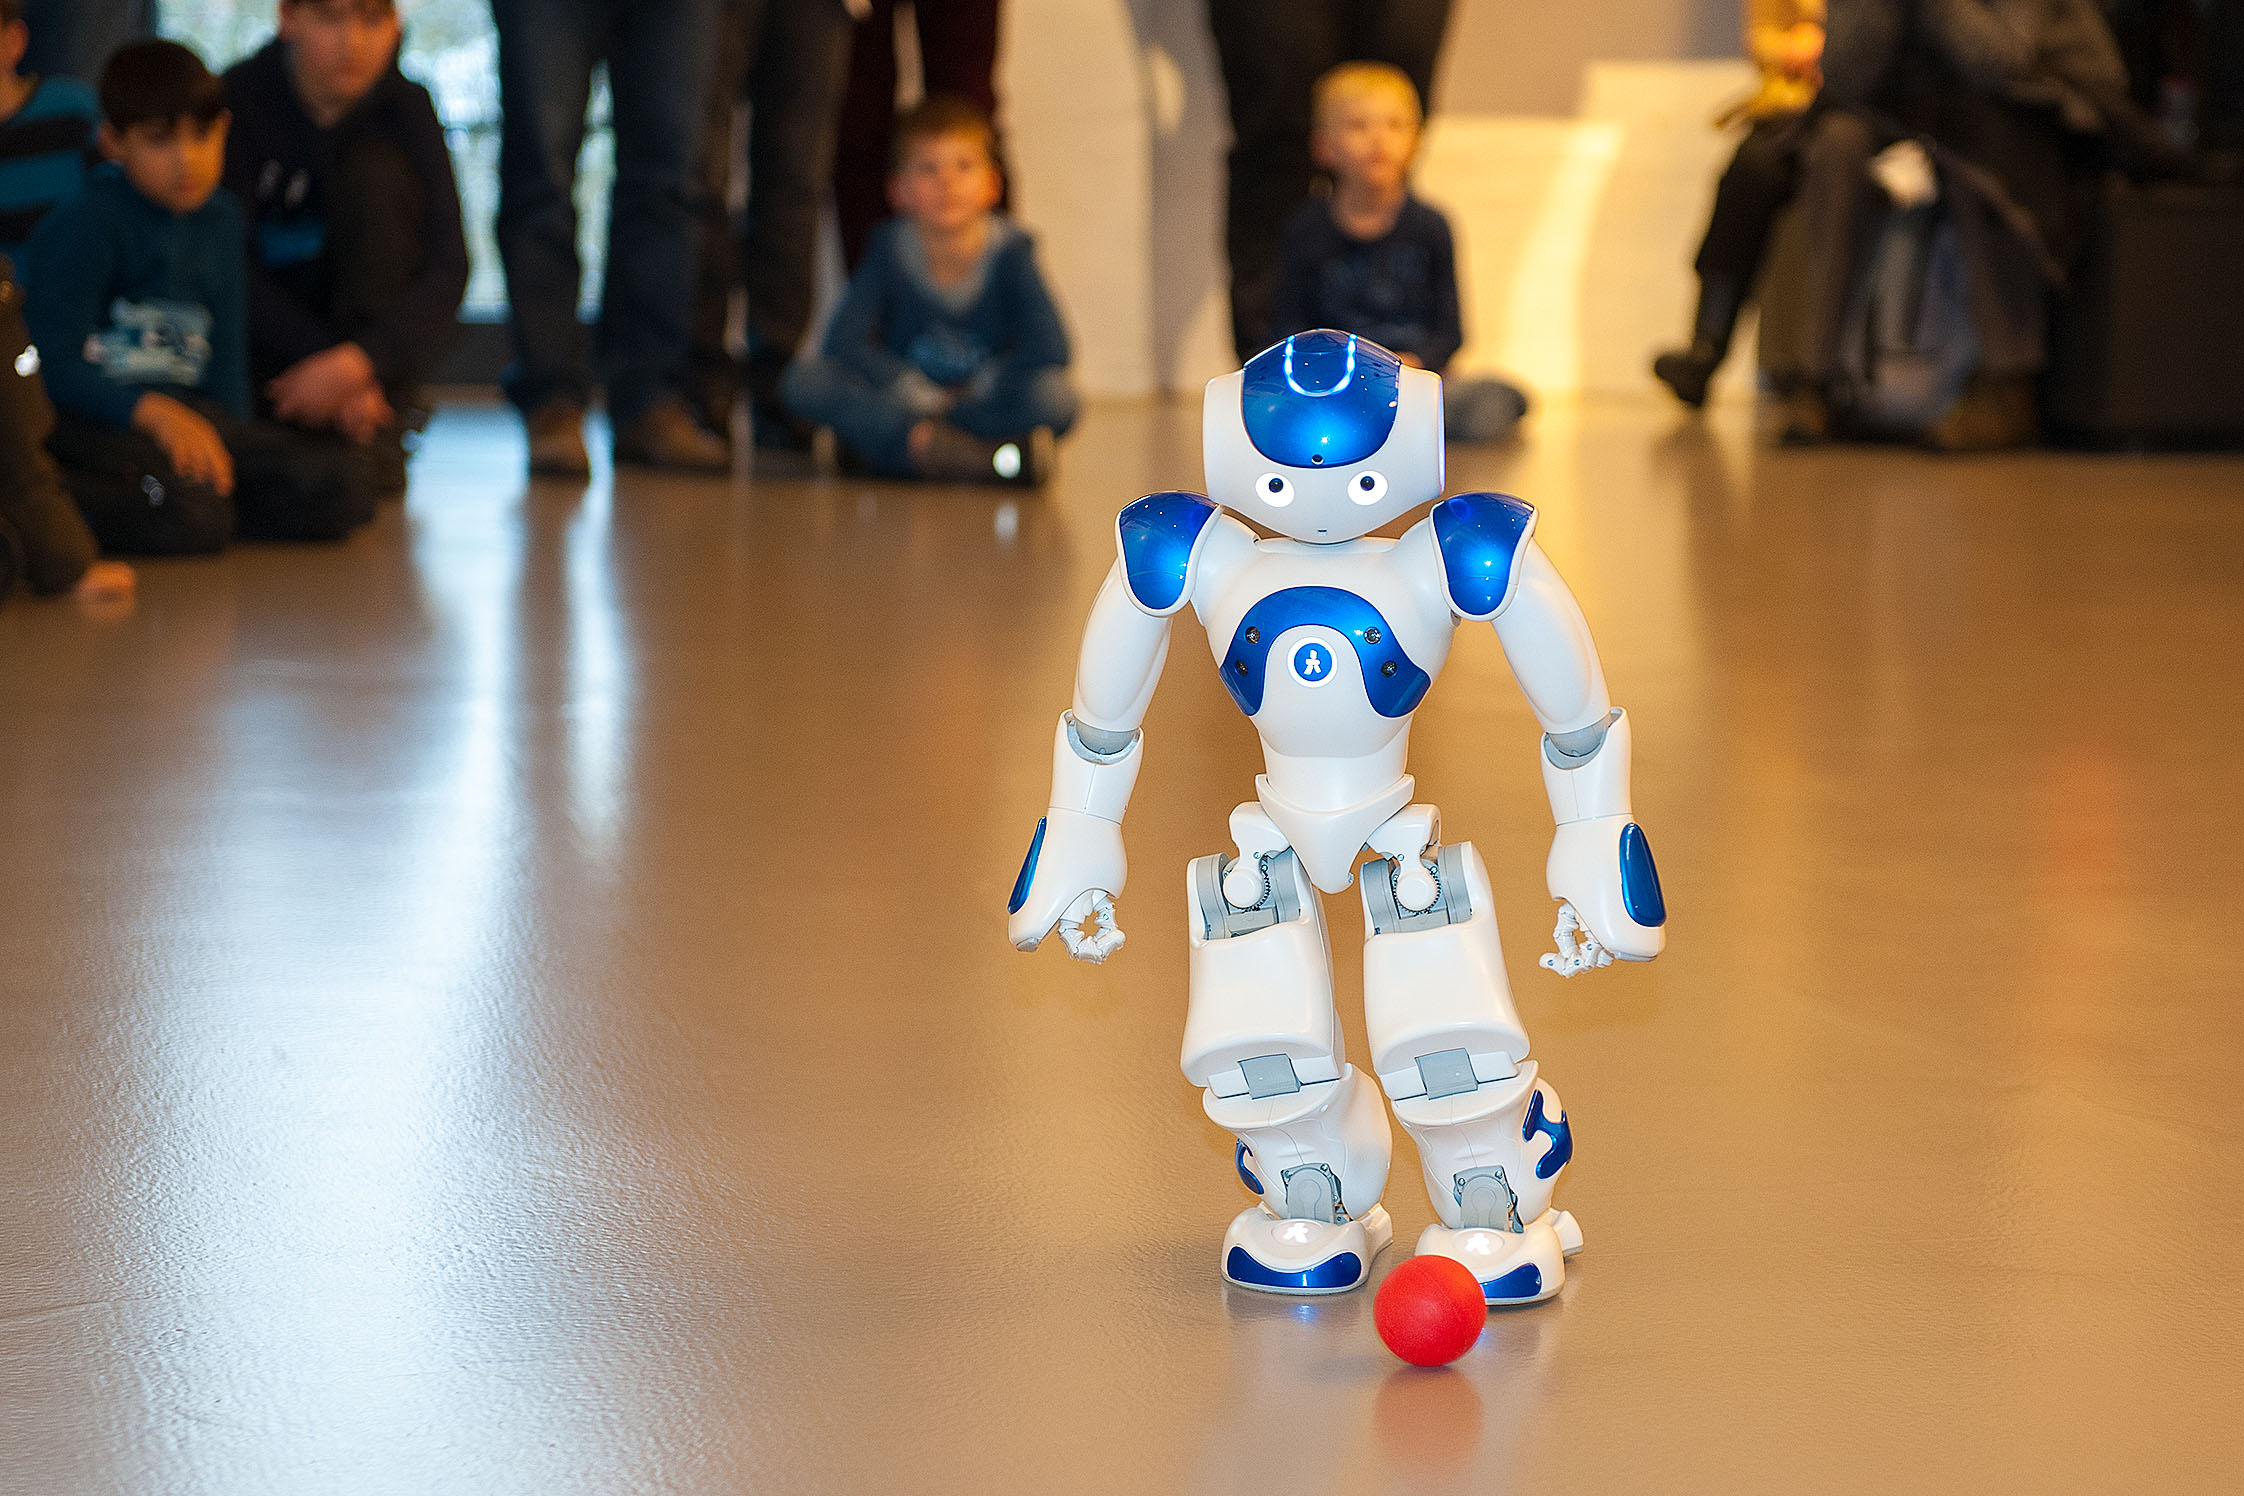 Der weiß-blaue Roboter NAO spielt mit einem kleinen roten Ball. Der etwa 60 Zentimeter große humanoide Roboter geht auf den Ball zu und versucht ihn zu treten. Im Hintergrund verfolgen Kinder und Erwachsene die Vorführung.